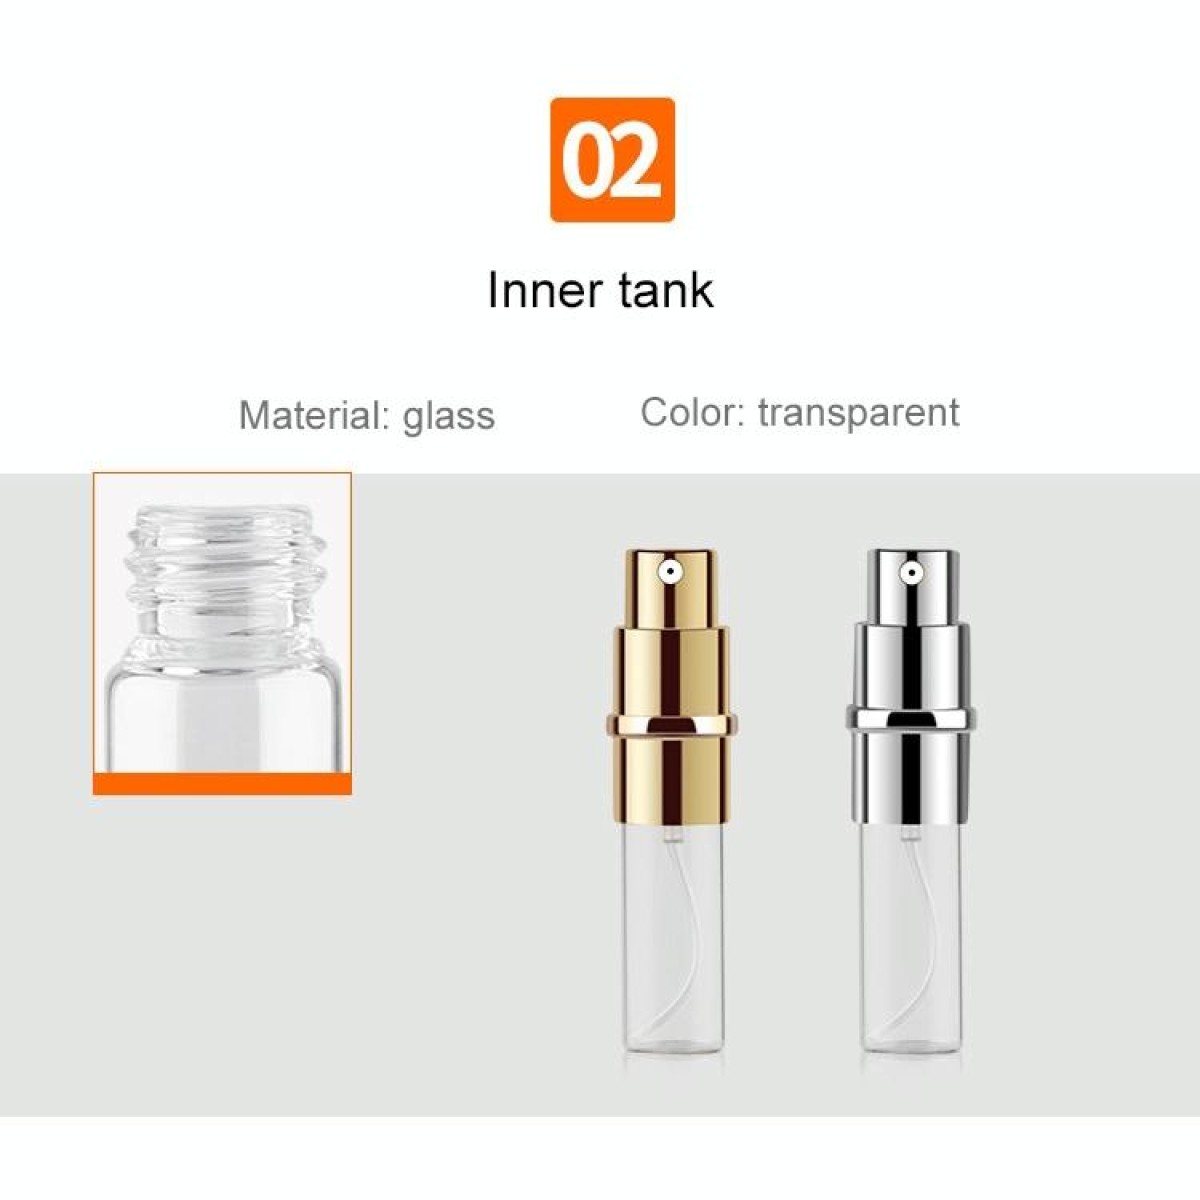 Portable Mini Refillable Glass Perfume Fine Mist Atomizers with Metallic Exterior, 5ml (Silver)